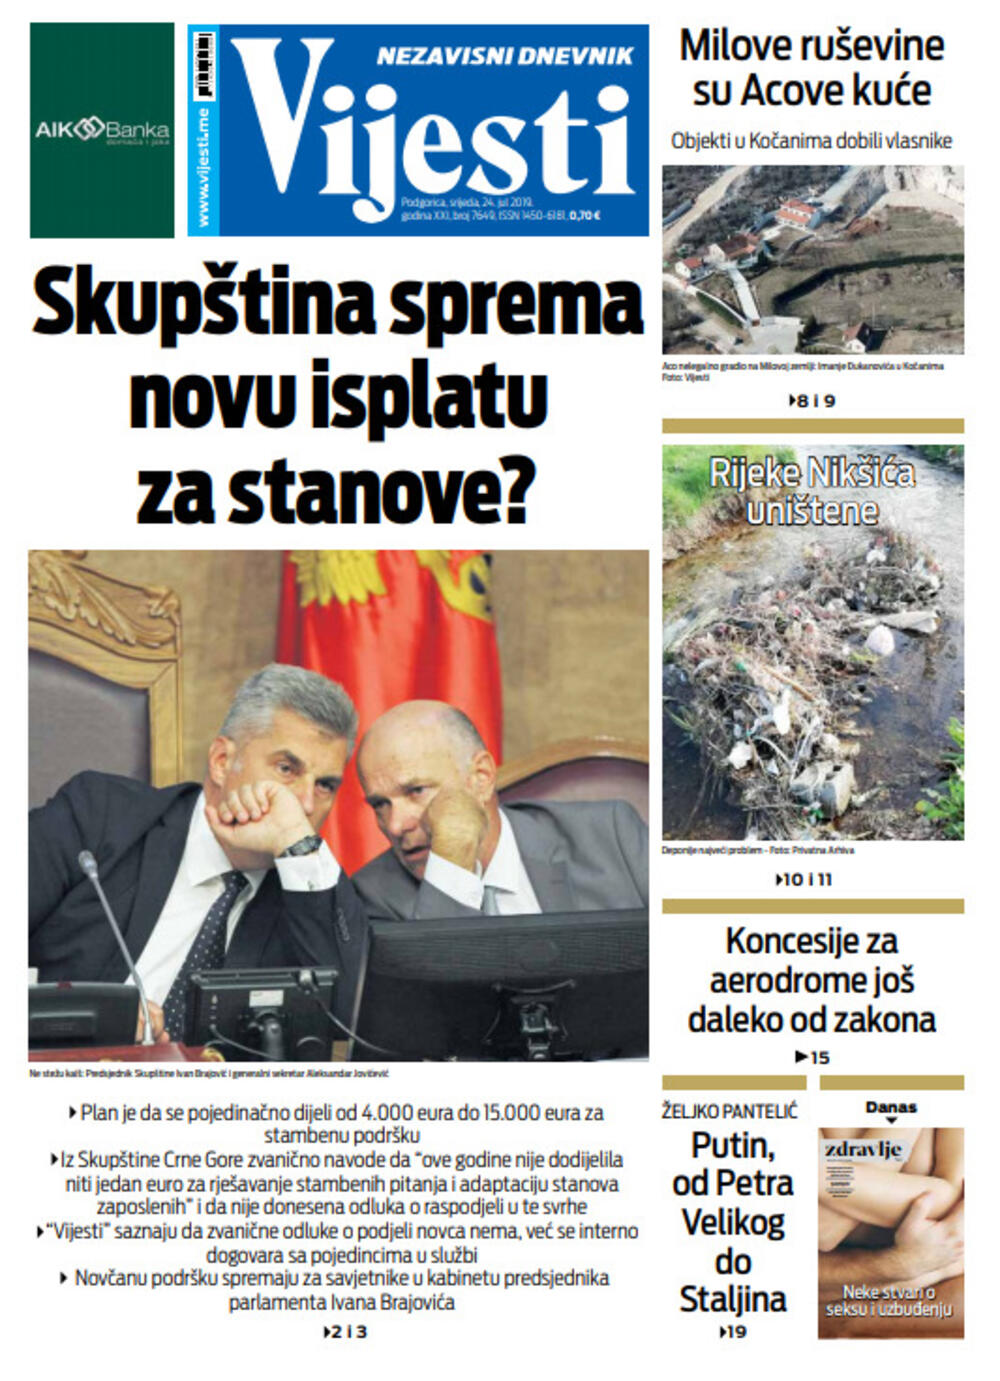 Naslovna strana "Vijesti" za 24. jul, Foto: Vijesti